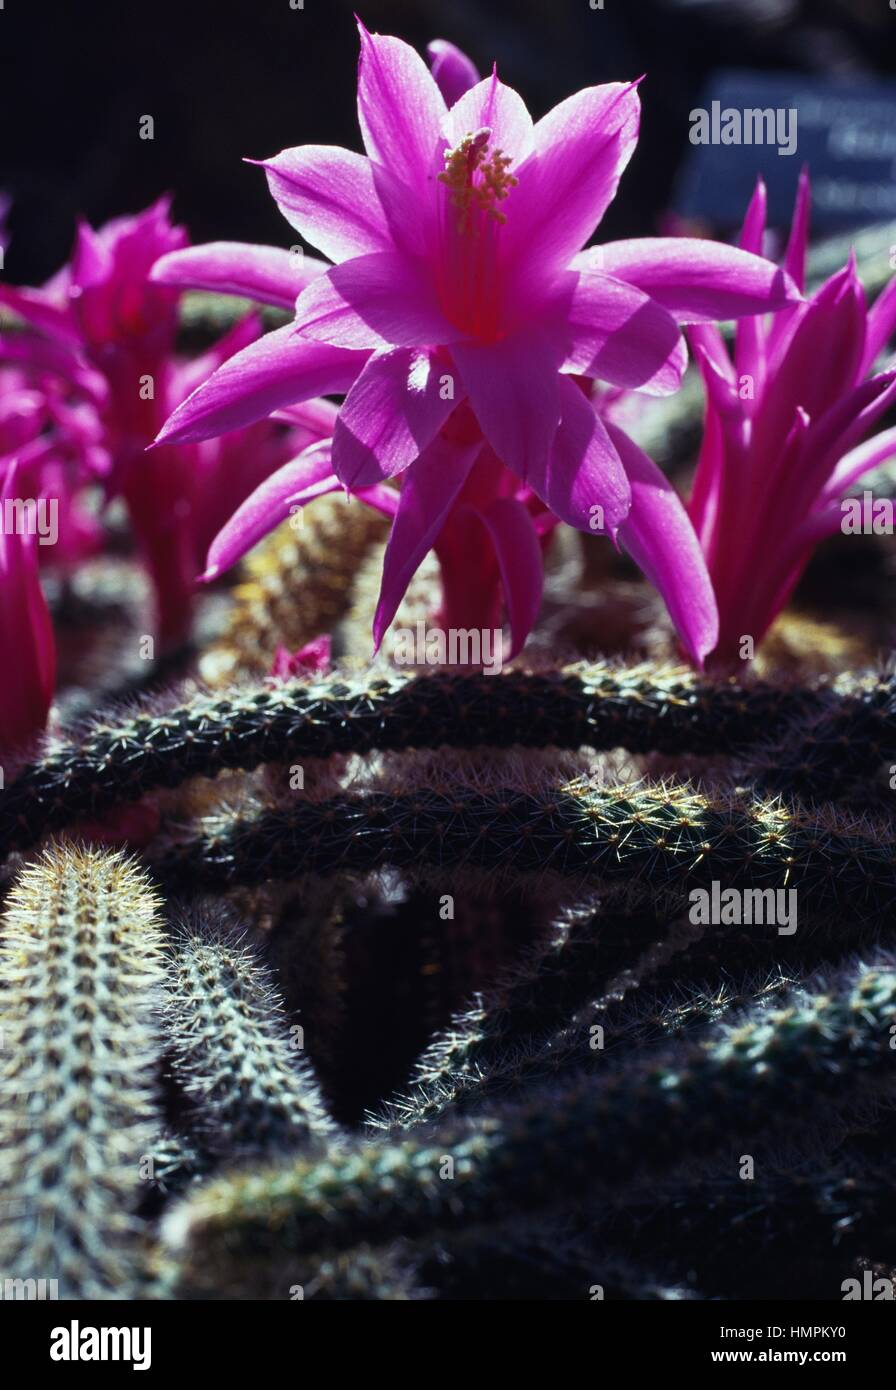 Rattail cactus (Aporocactus flagelliformis), Cactaceae. Stock Photo